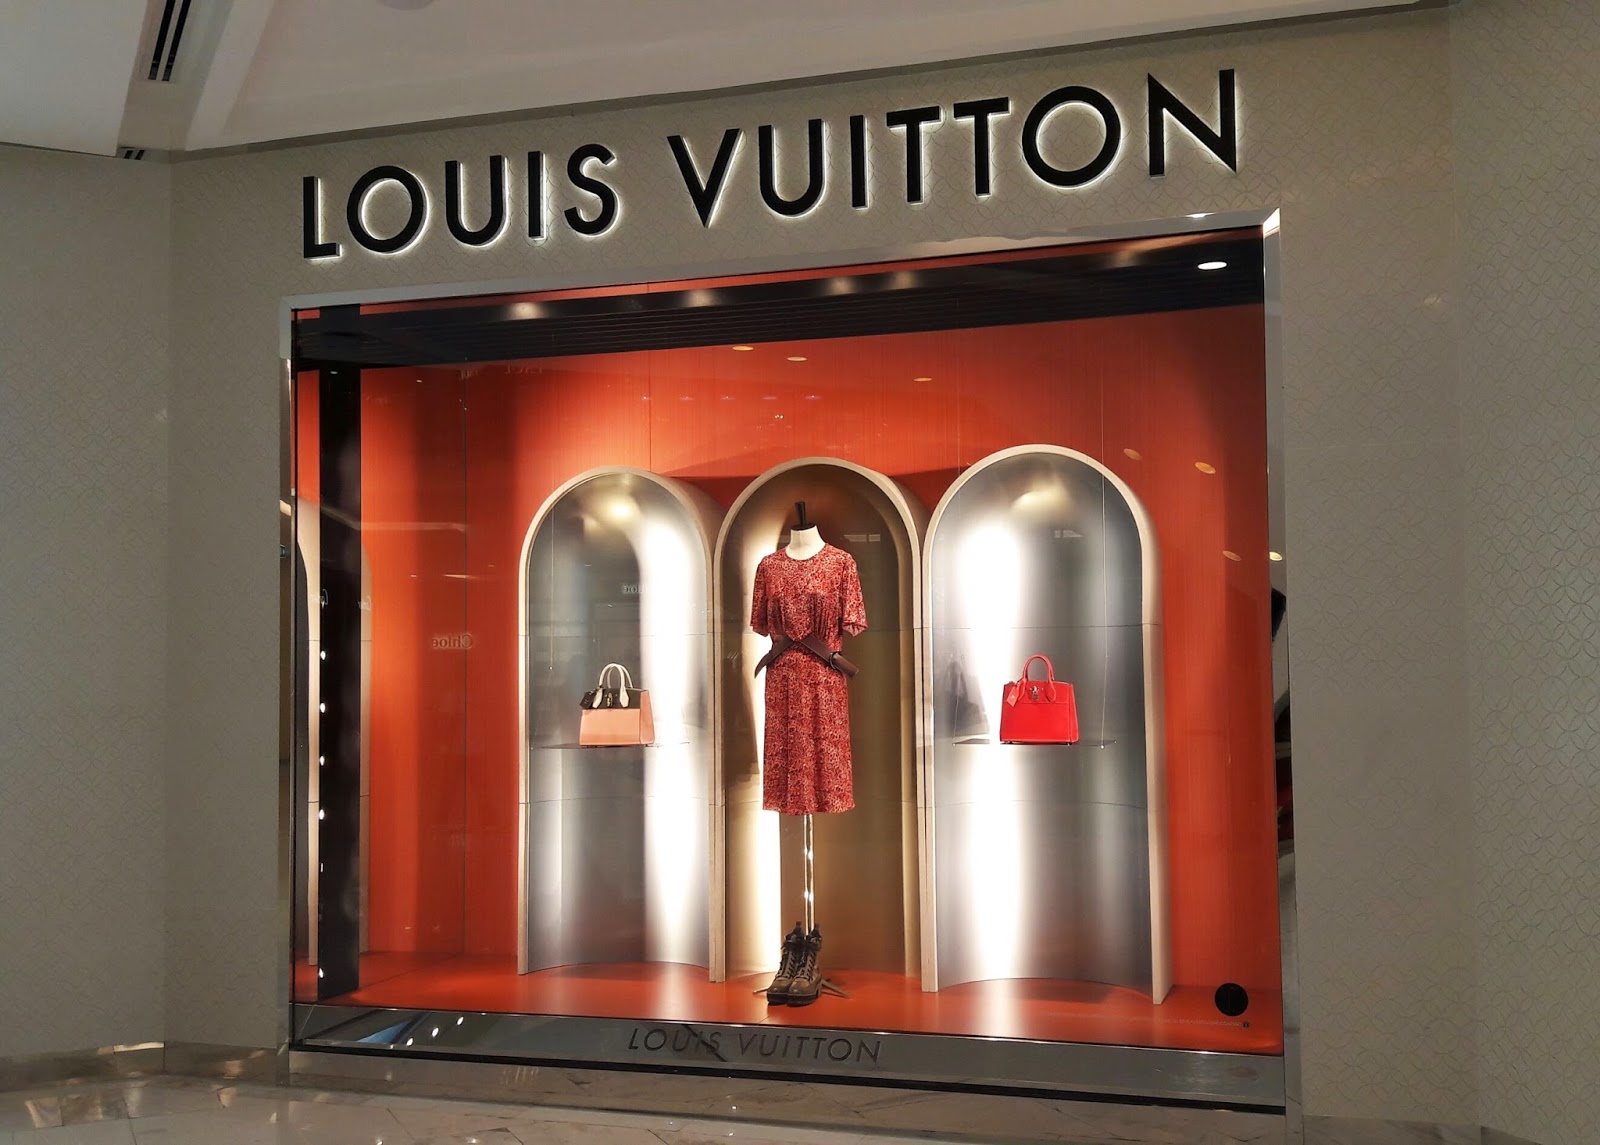 Louis Vuitton Bangkok Emporium store, Thailand